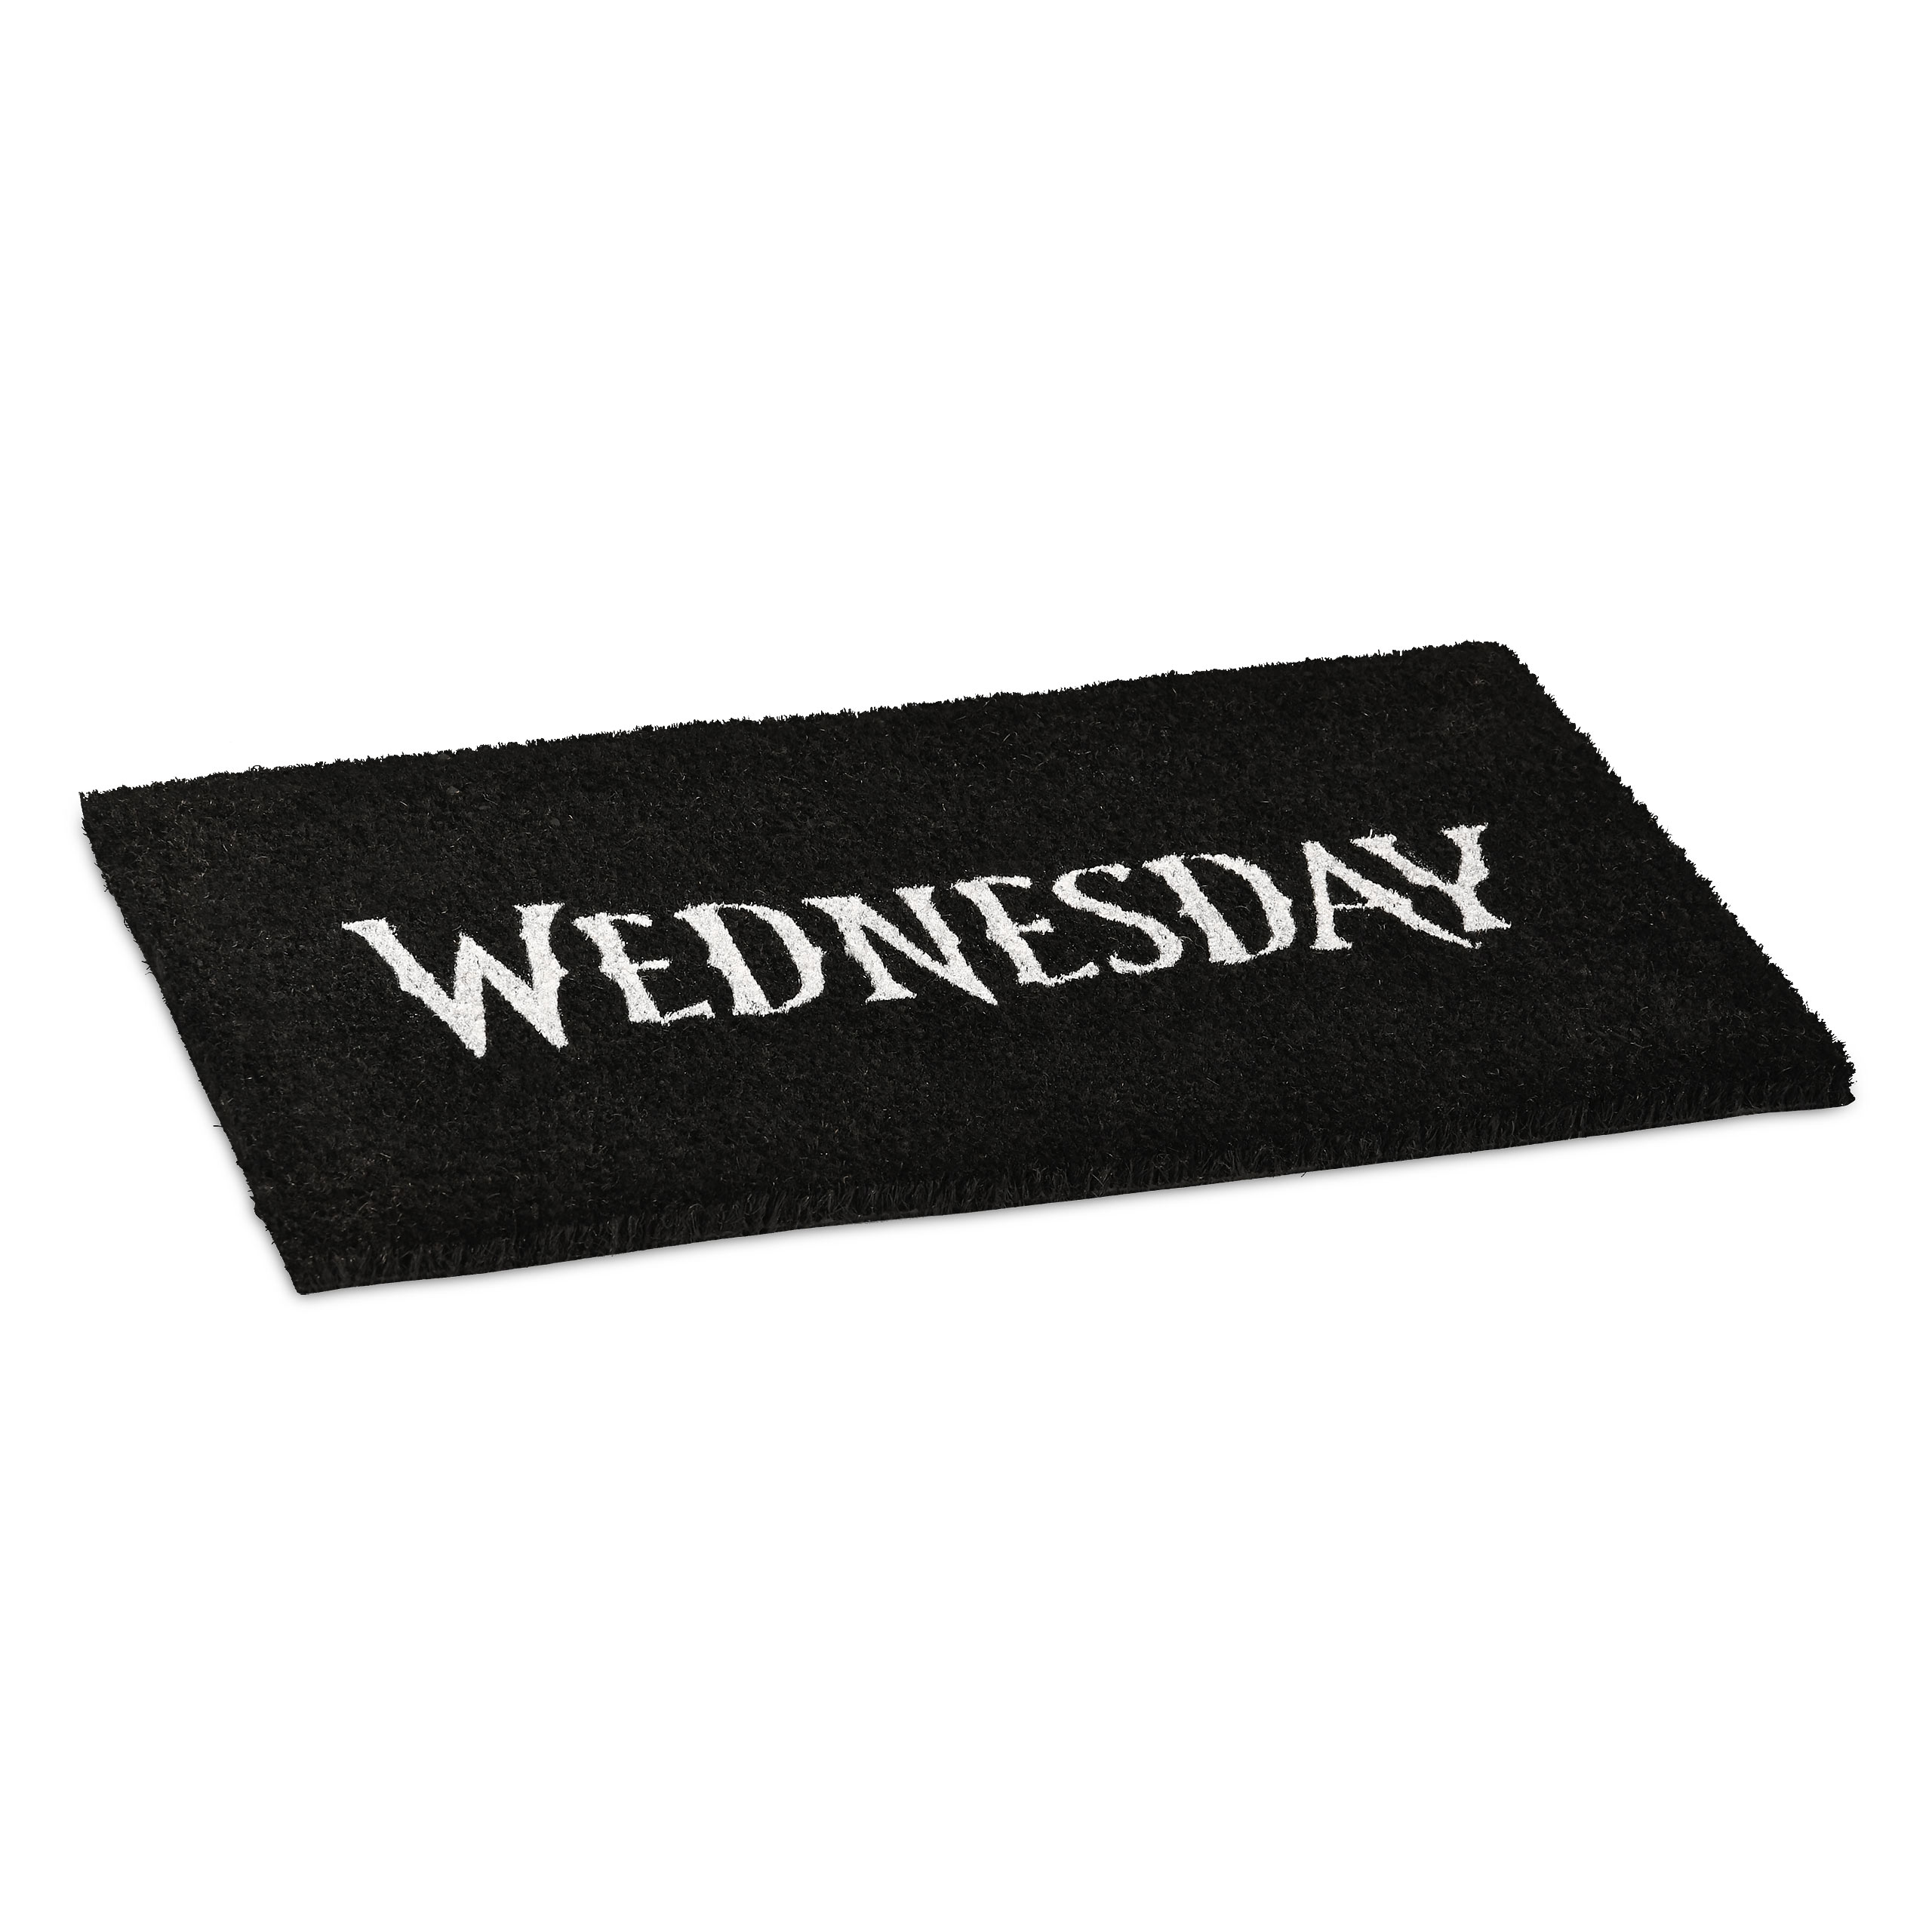 Wednesday - Logo Doormat